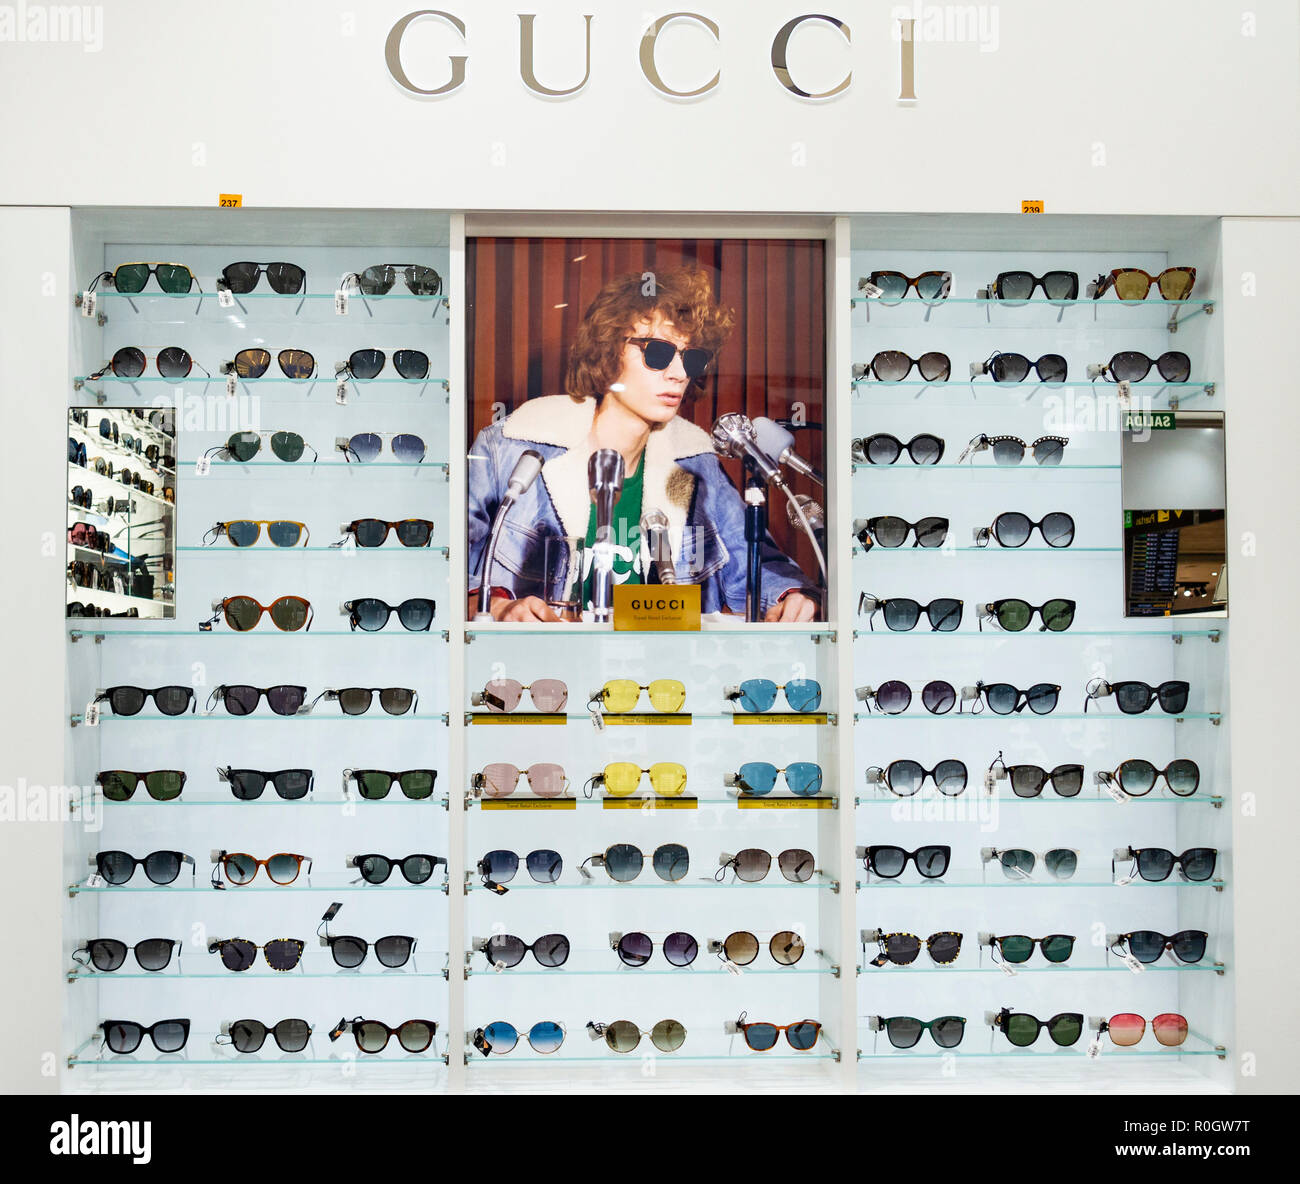 gucci sunglasses store